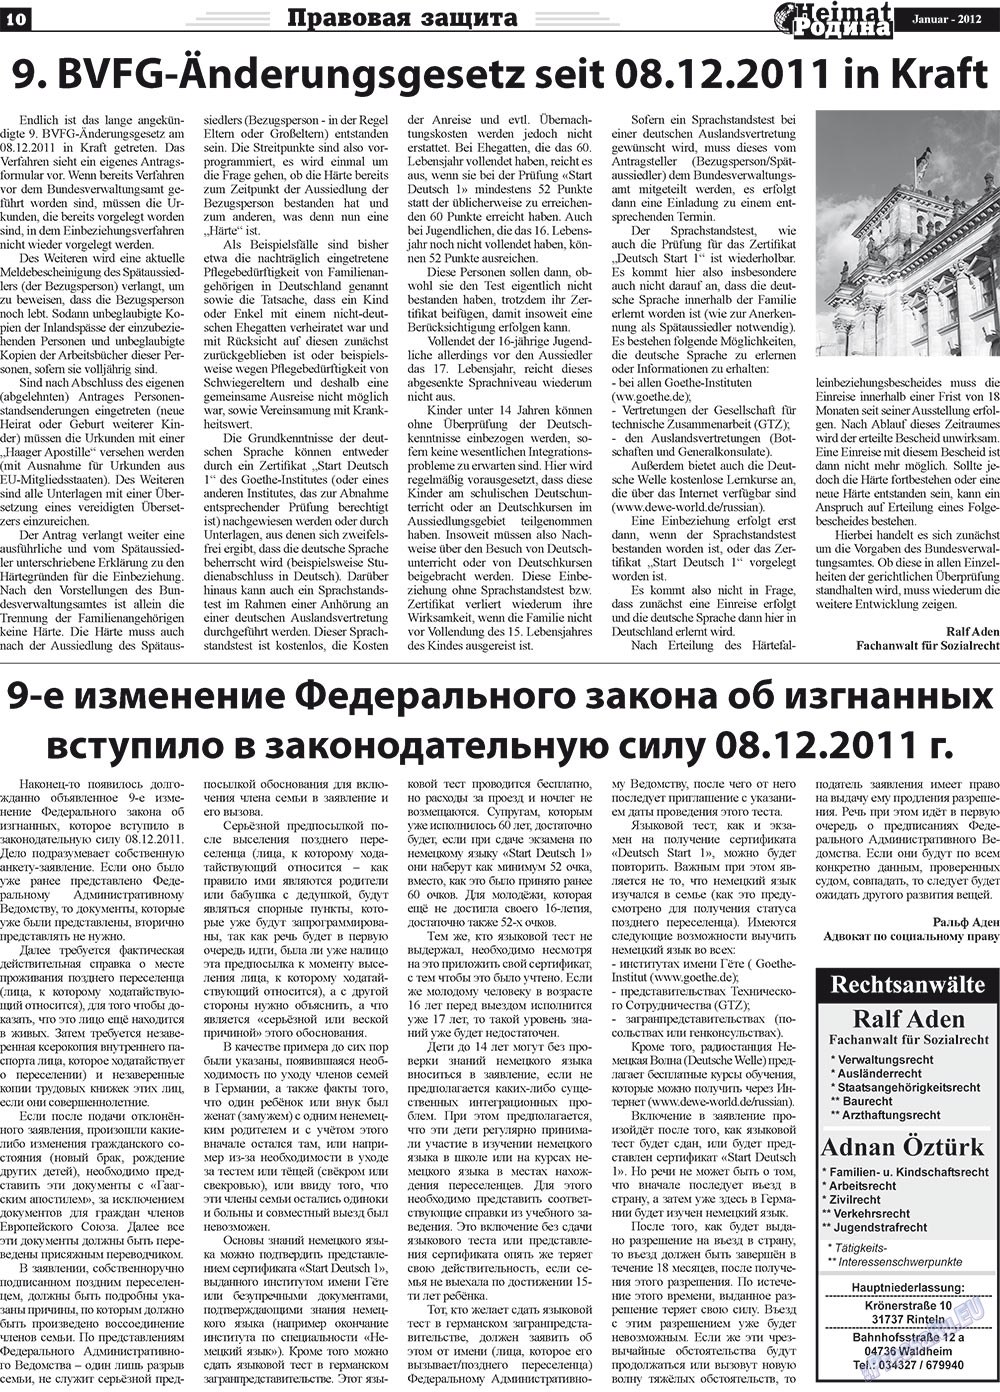 Heimat-Родина (газета). 2012 год, номер 1, стр. 10